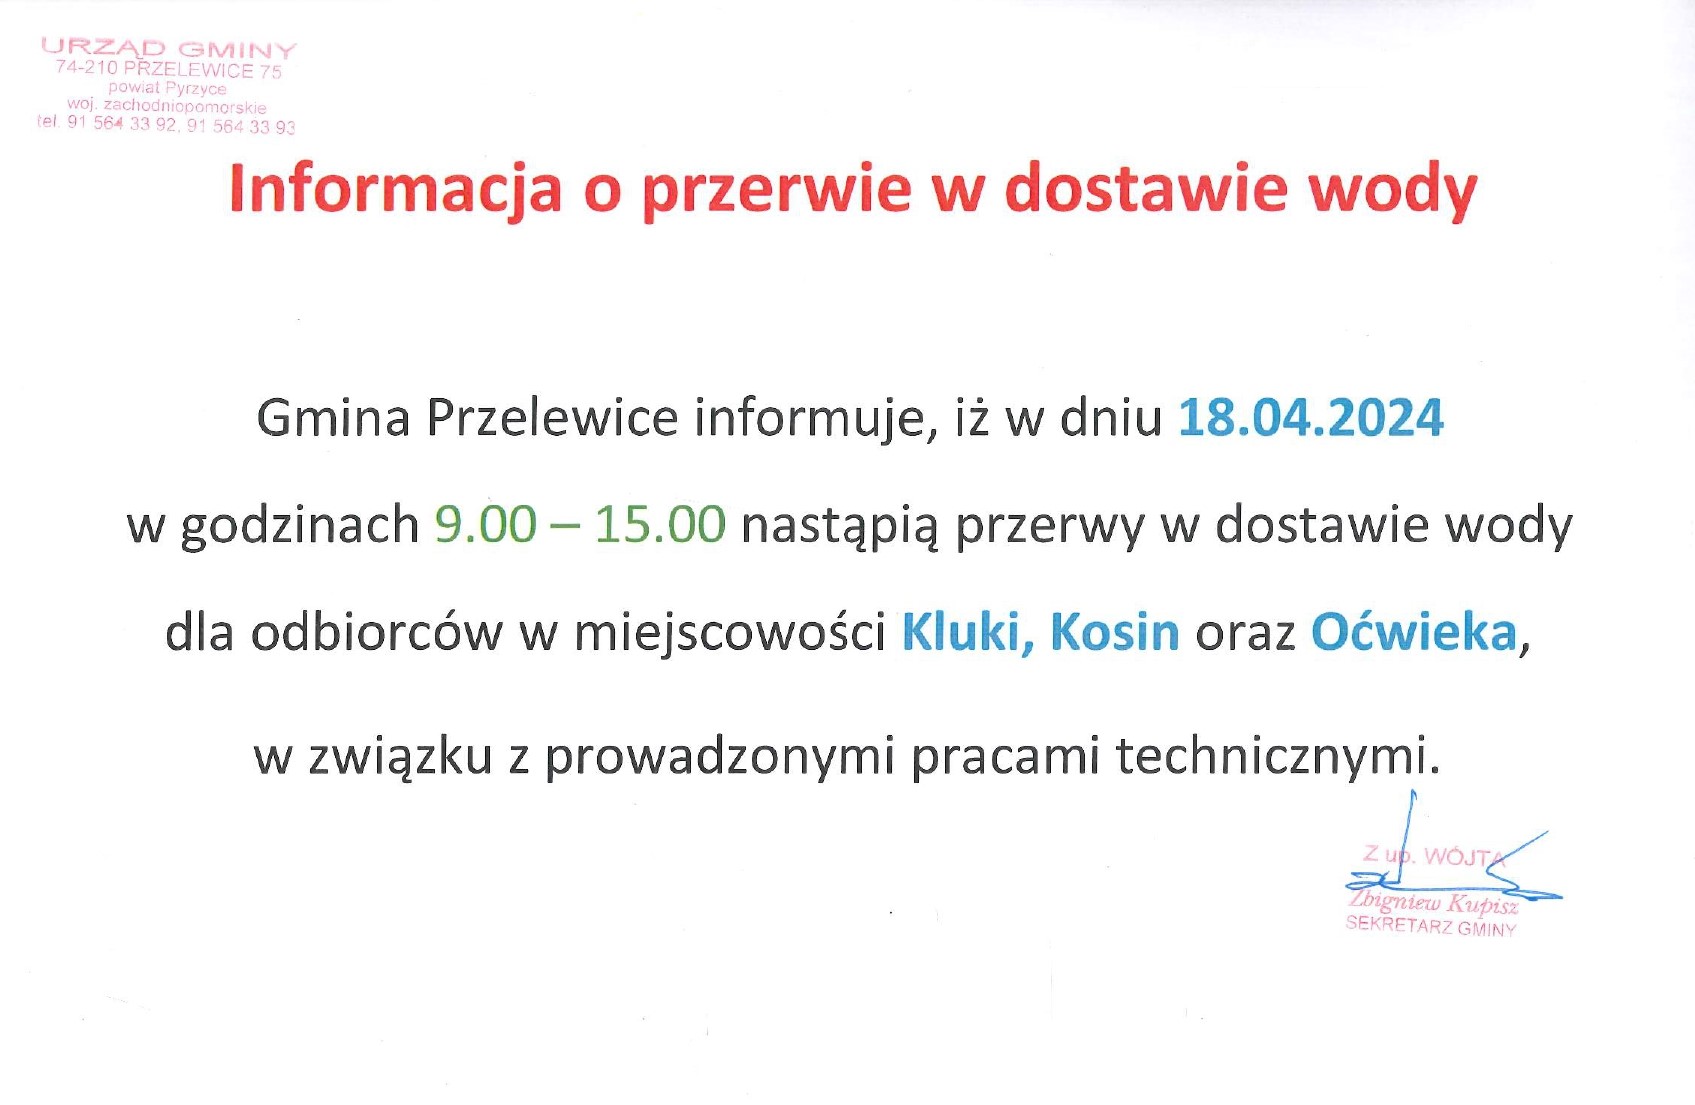 Informacja o braku wody w Kosinie, Klukach i Oćwiece w dniu 18.04.2024 r.